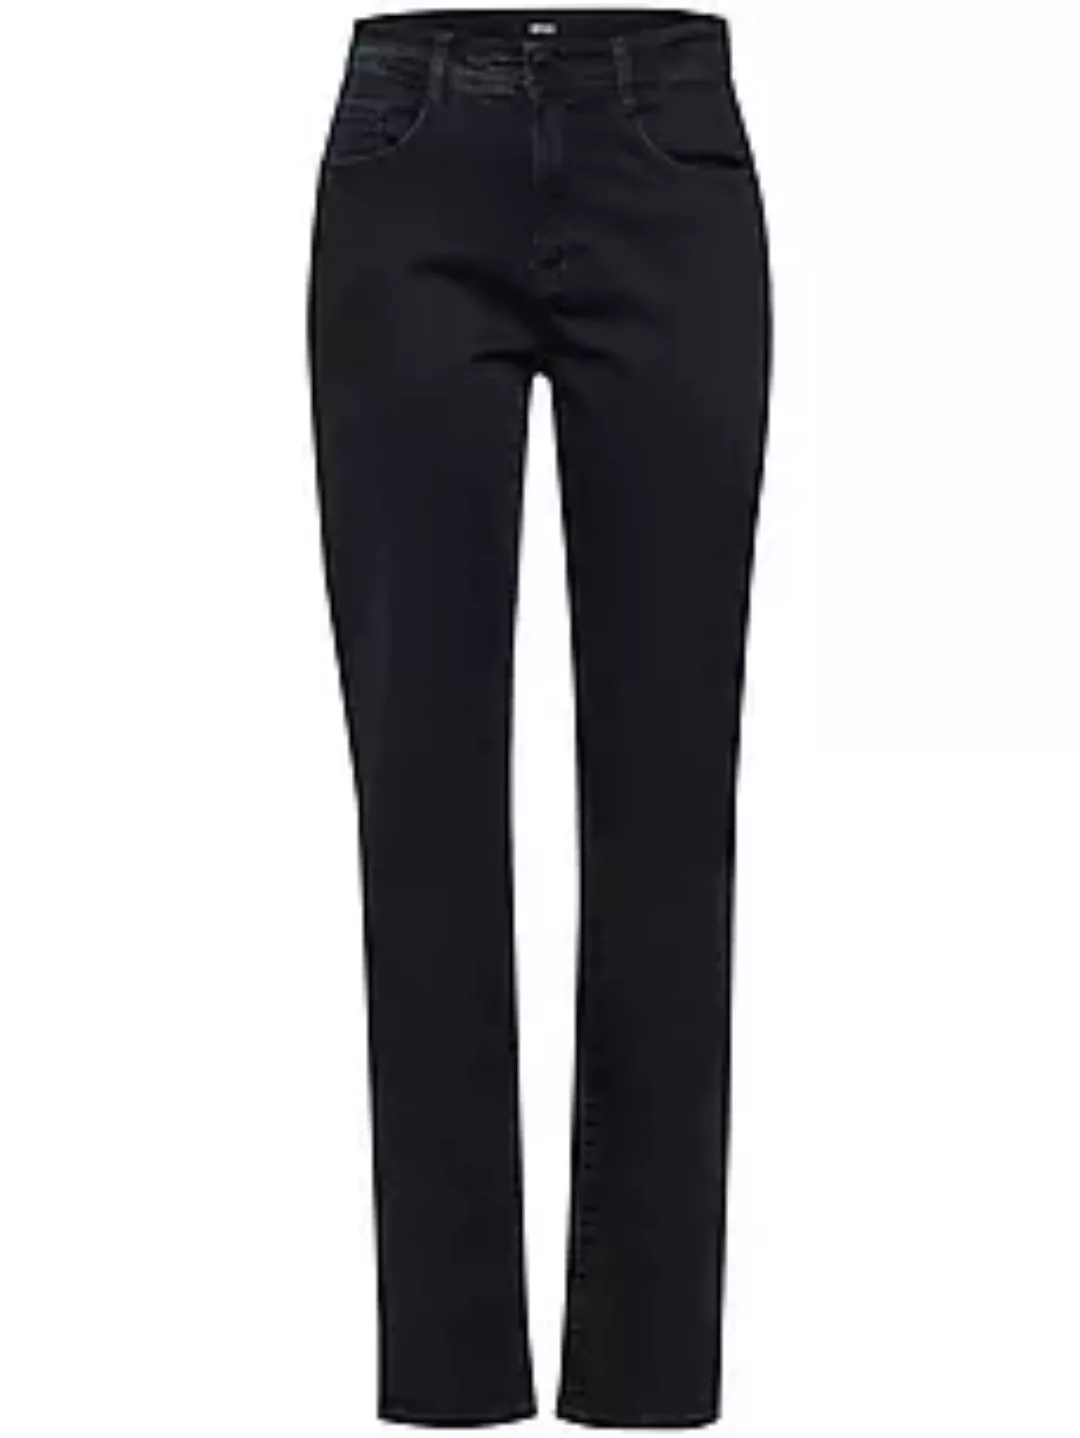 Jeans Modell Nicola Brax Feel Good denim günstig online kaufen